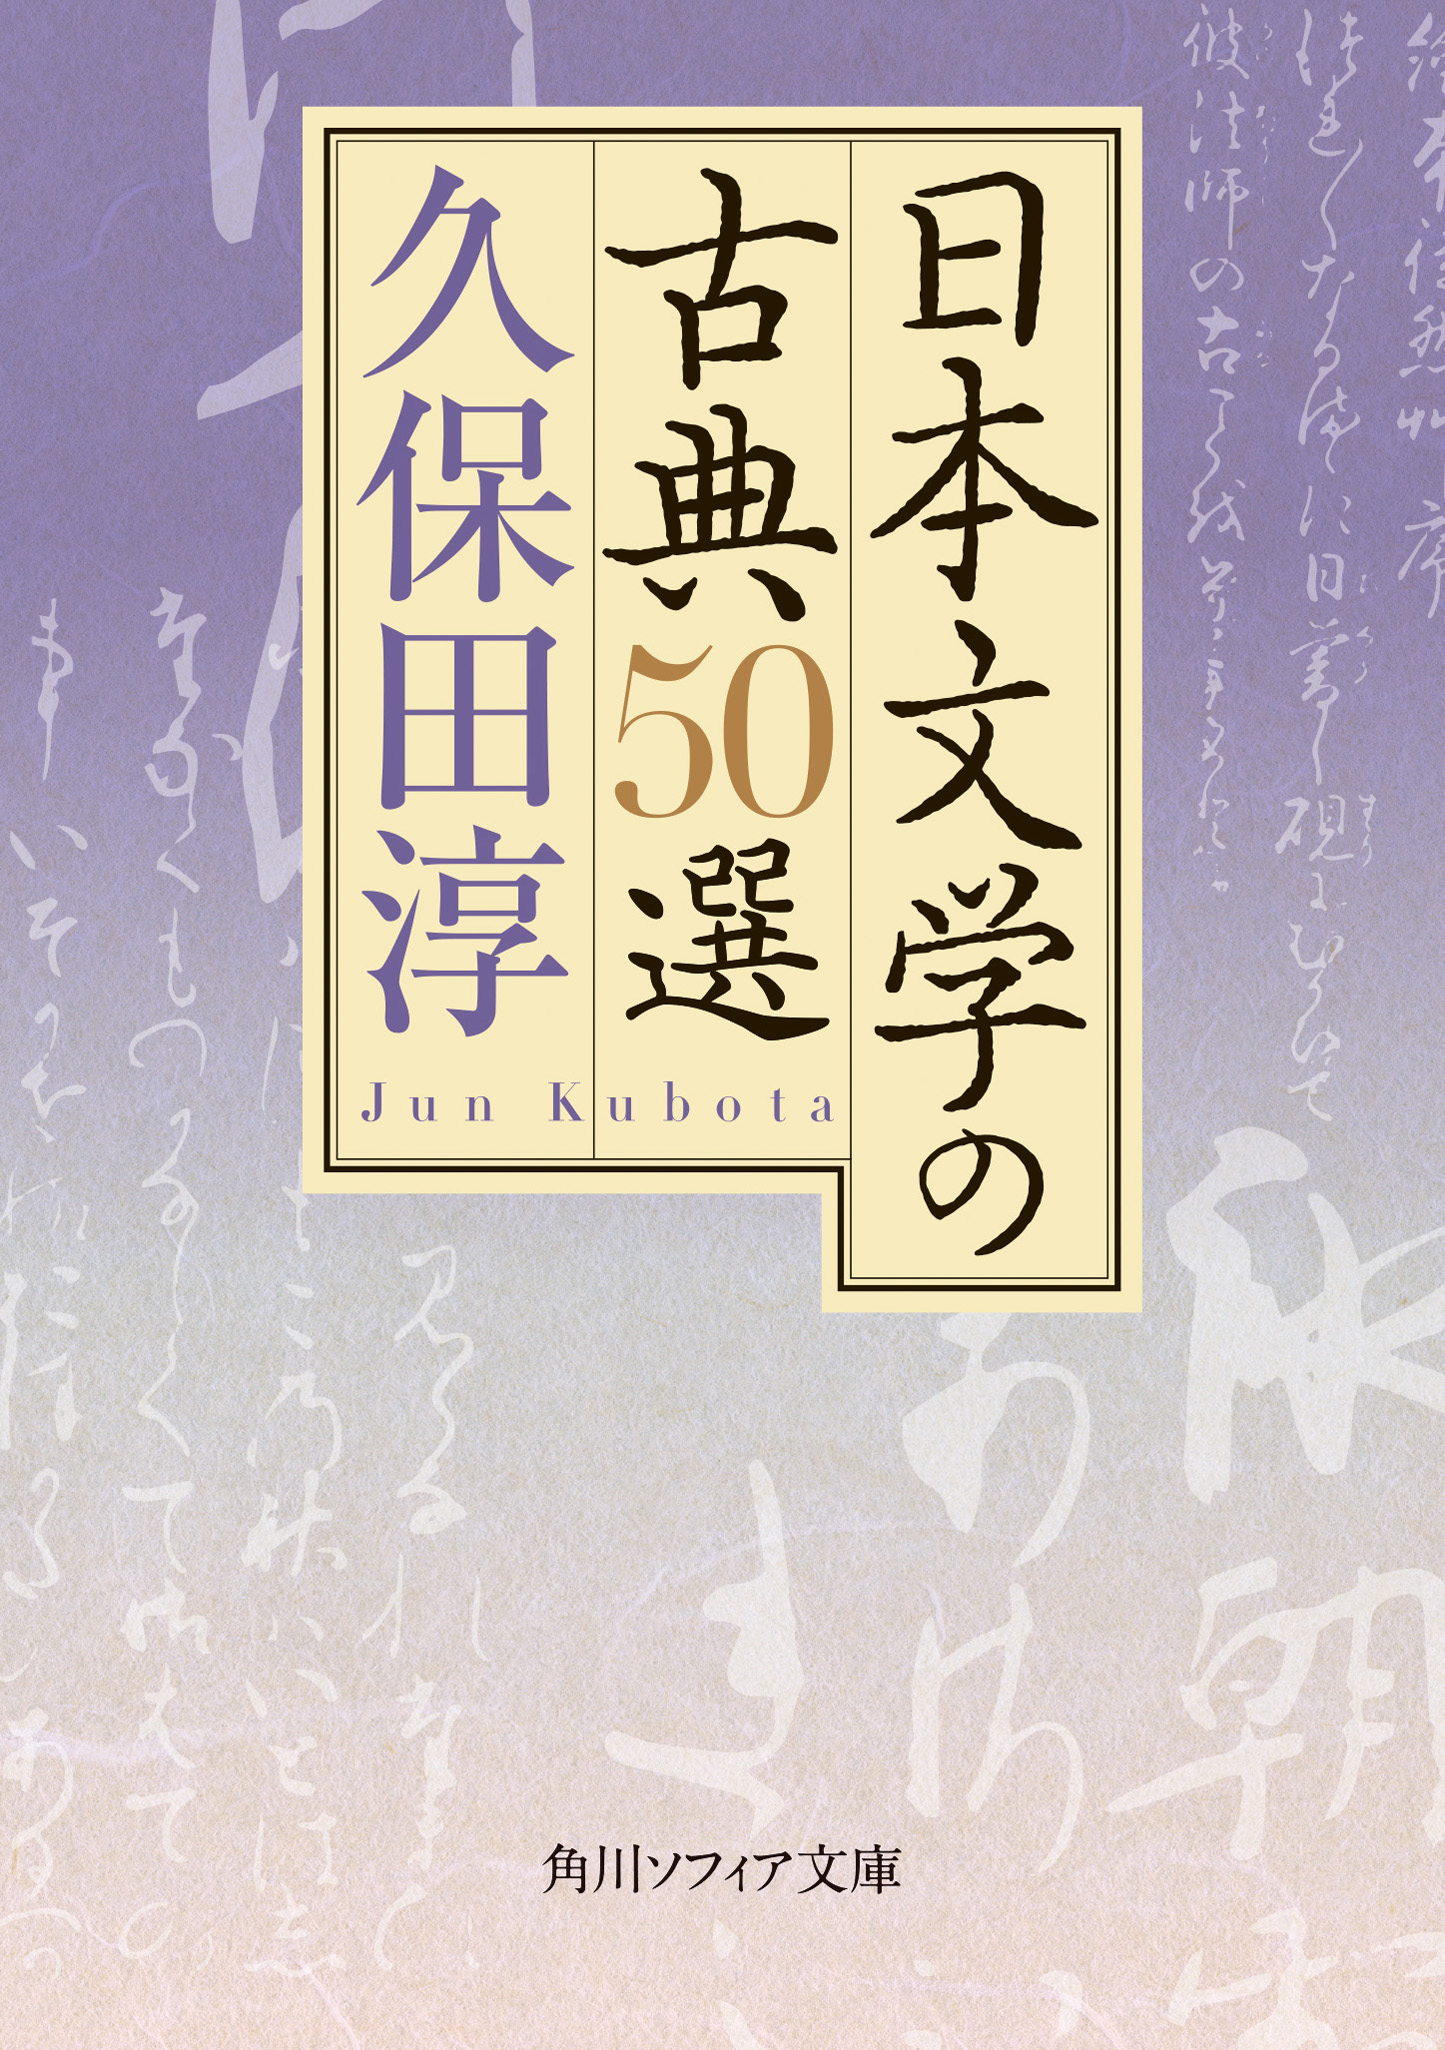 Kadokawa公式ショップ 日本文学の古典50選 本 カドカワストア オリジナル特典 本 関連グッズ Blu Ray Dvd Cd